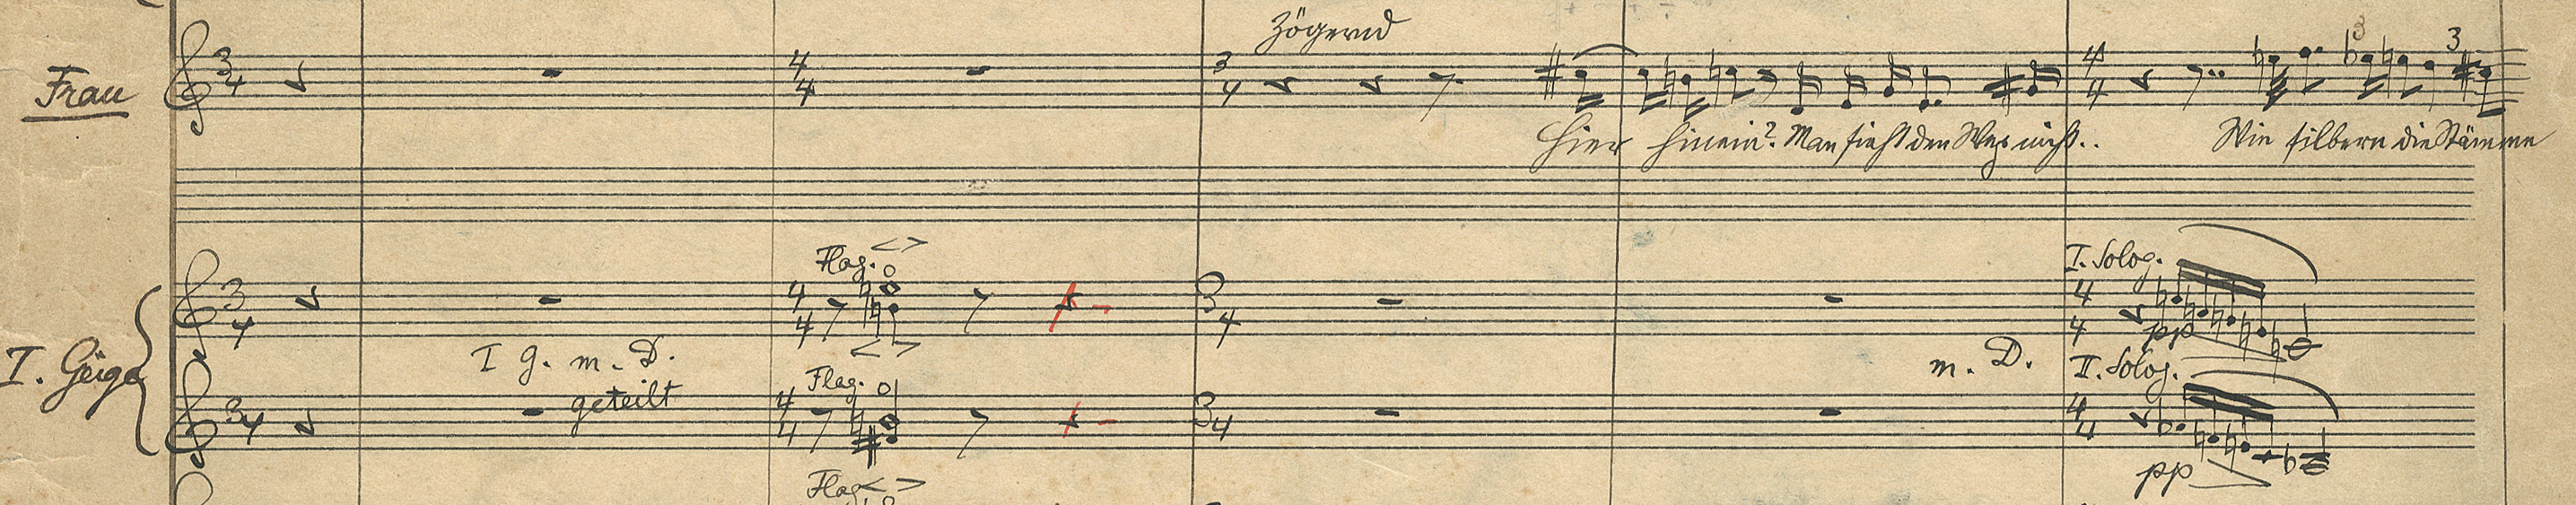 Erwartung op. 17, Partiturabschrift | Arnold Schönberg Center, Wien